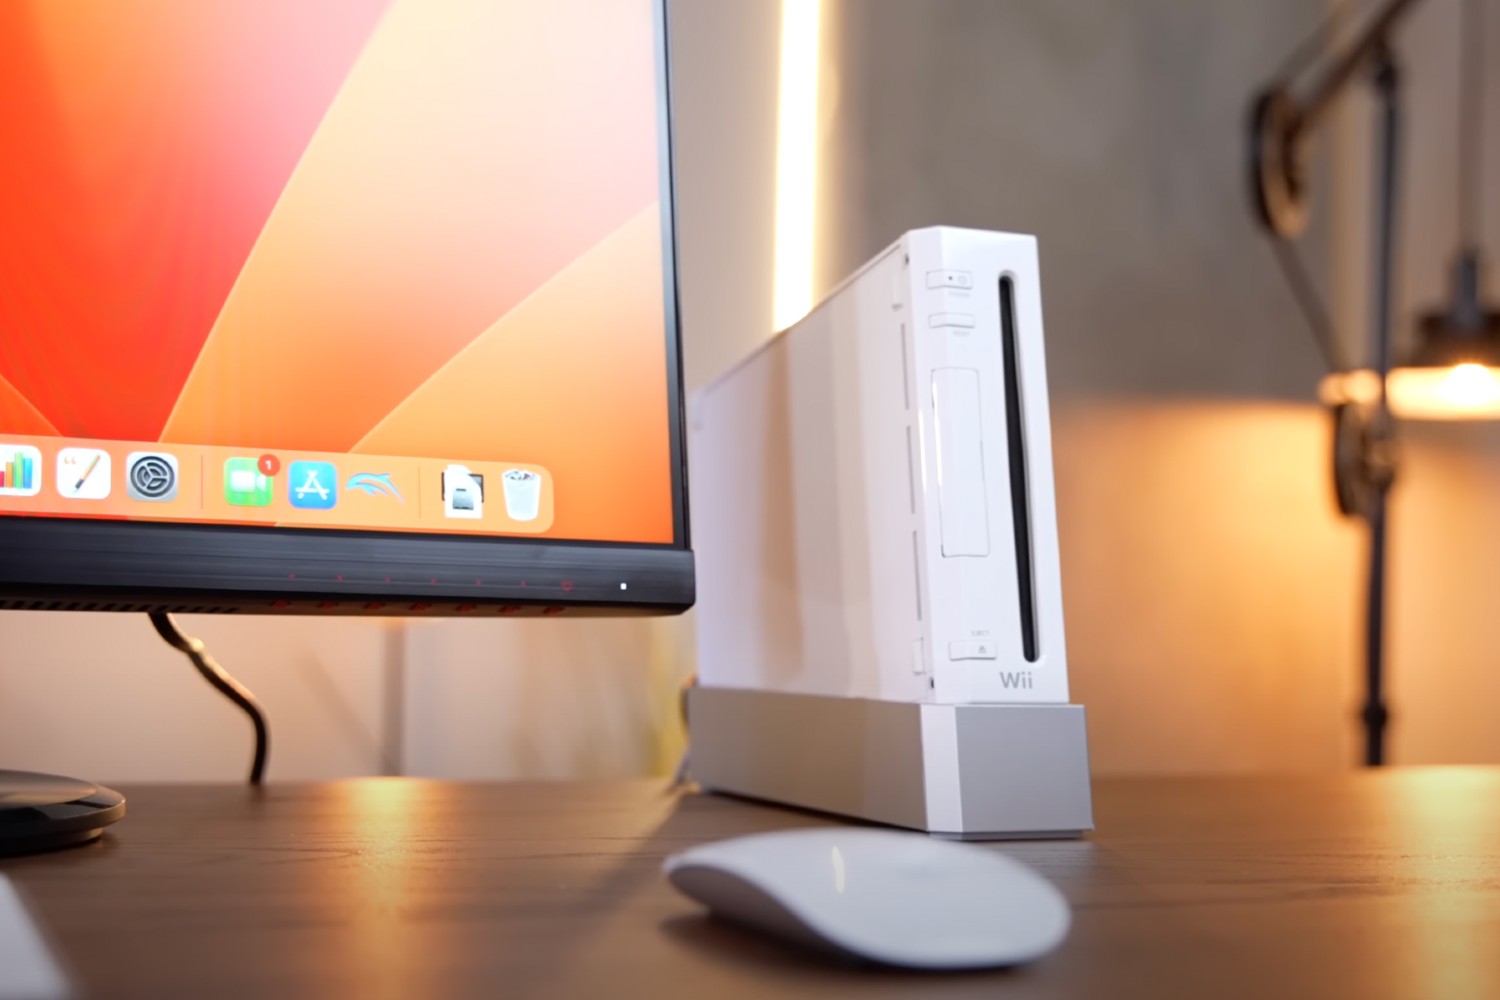 एक संशोधित निन्टेंडो Wii, एक मॉनिटर पर macOS चलाते हुए दिखाया गया है।